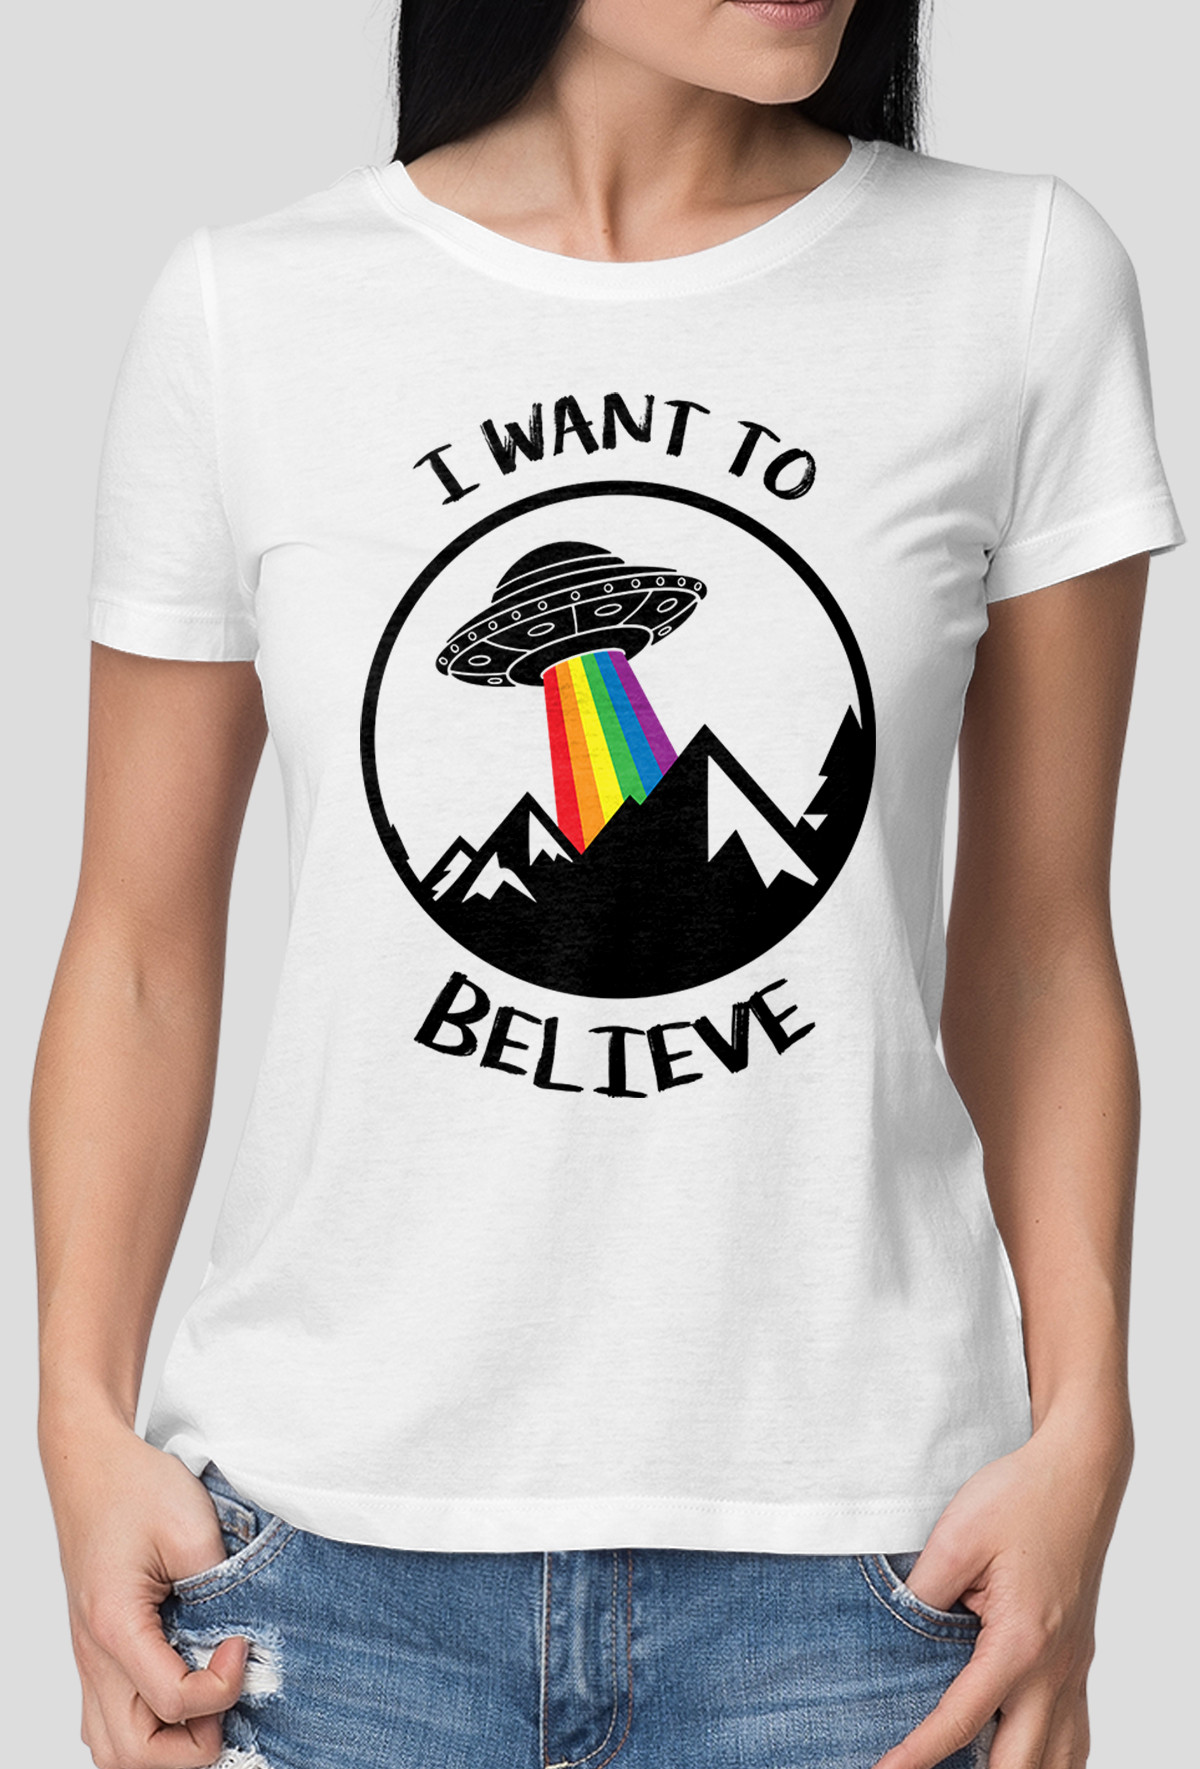 Koszulka - Want to believe (Oryginalny Prezent)